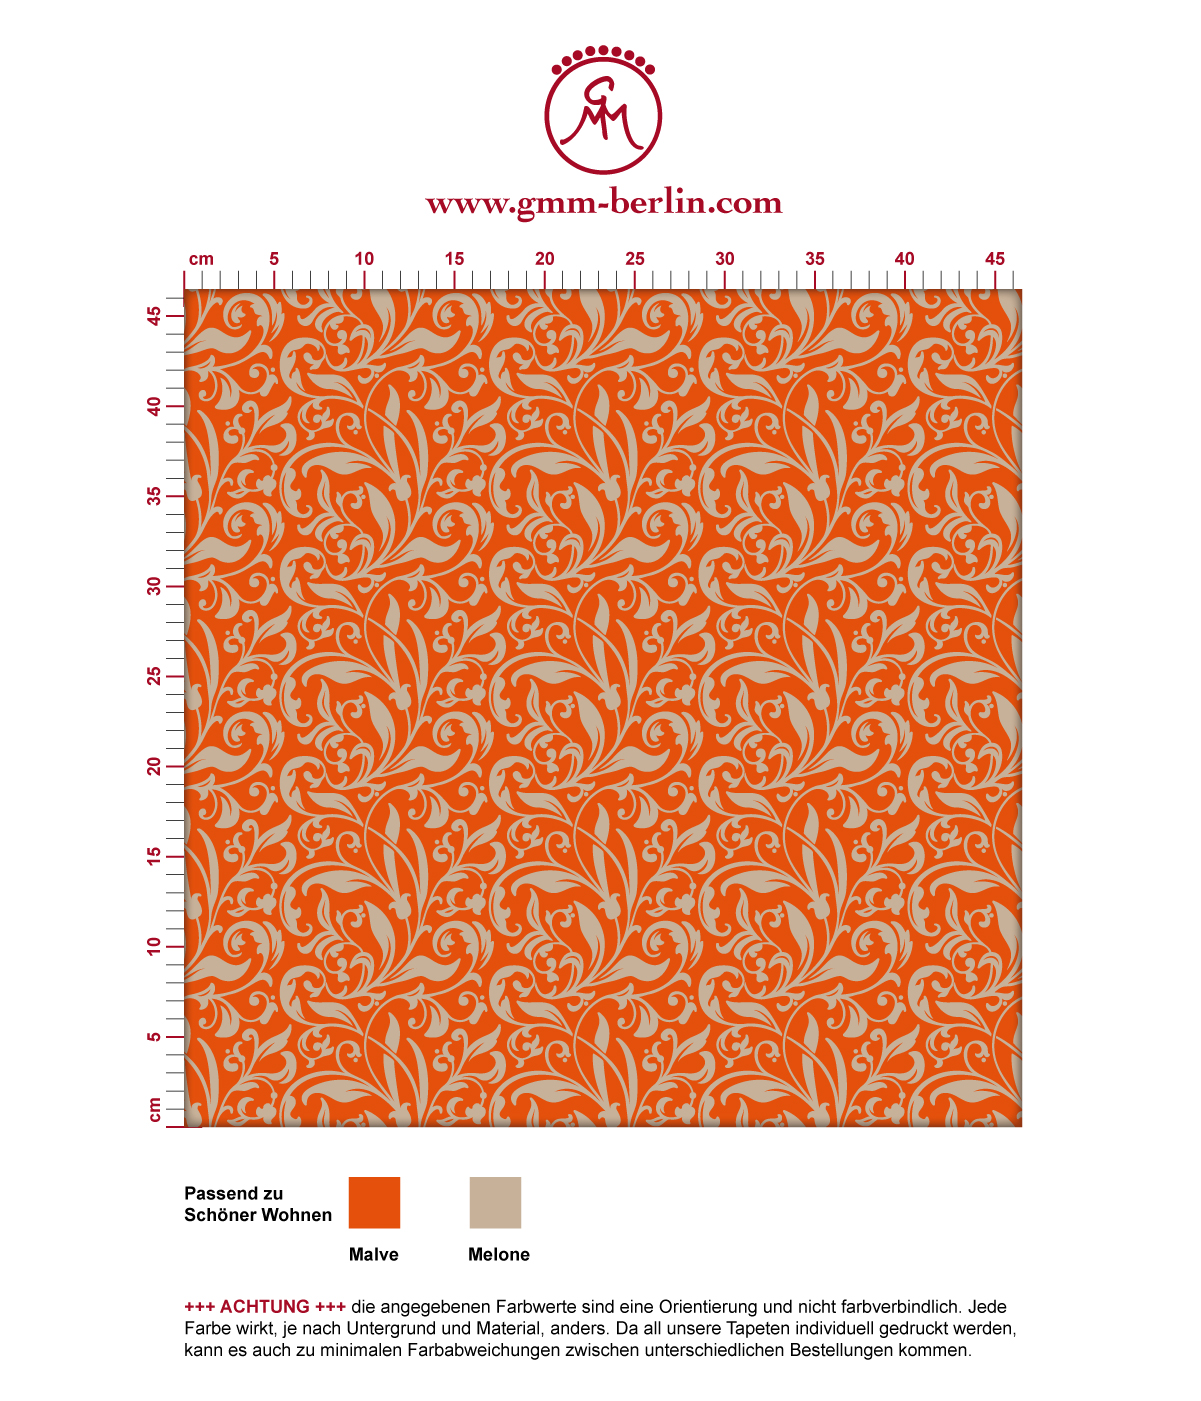 Schöne Tapete "Victorian Delight" mit victorianischem Blatt Muster orange angepasst an Schöner Wohnen Wandfarben. Aus dem GMM-BERLIN.com Sortiment: Schöne Tapeten in der Farbe: Orange